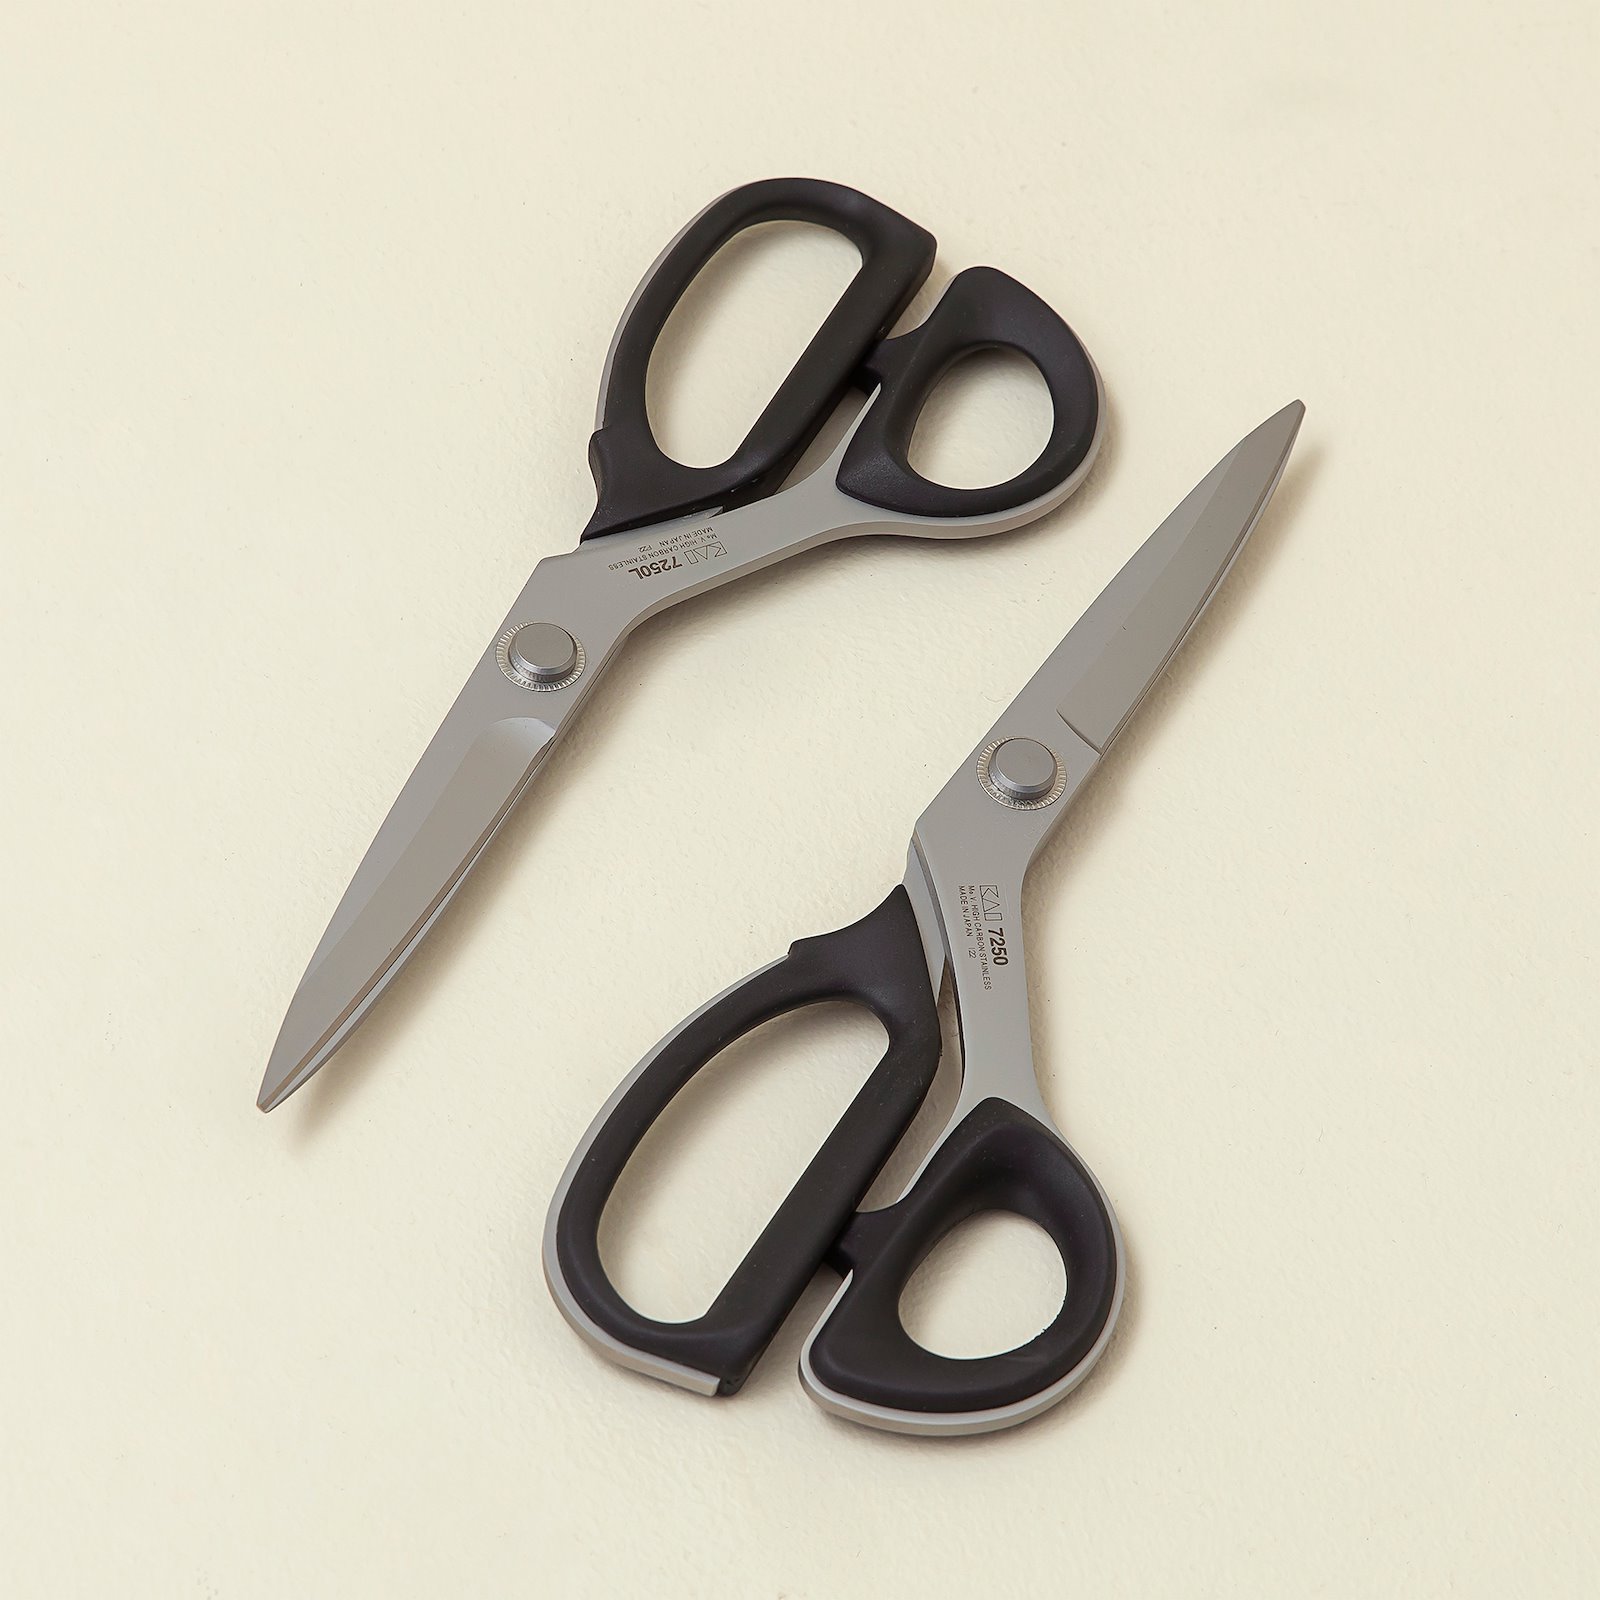 KAI tailor scissors left hand 25cm 42081_42082_sskit